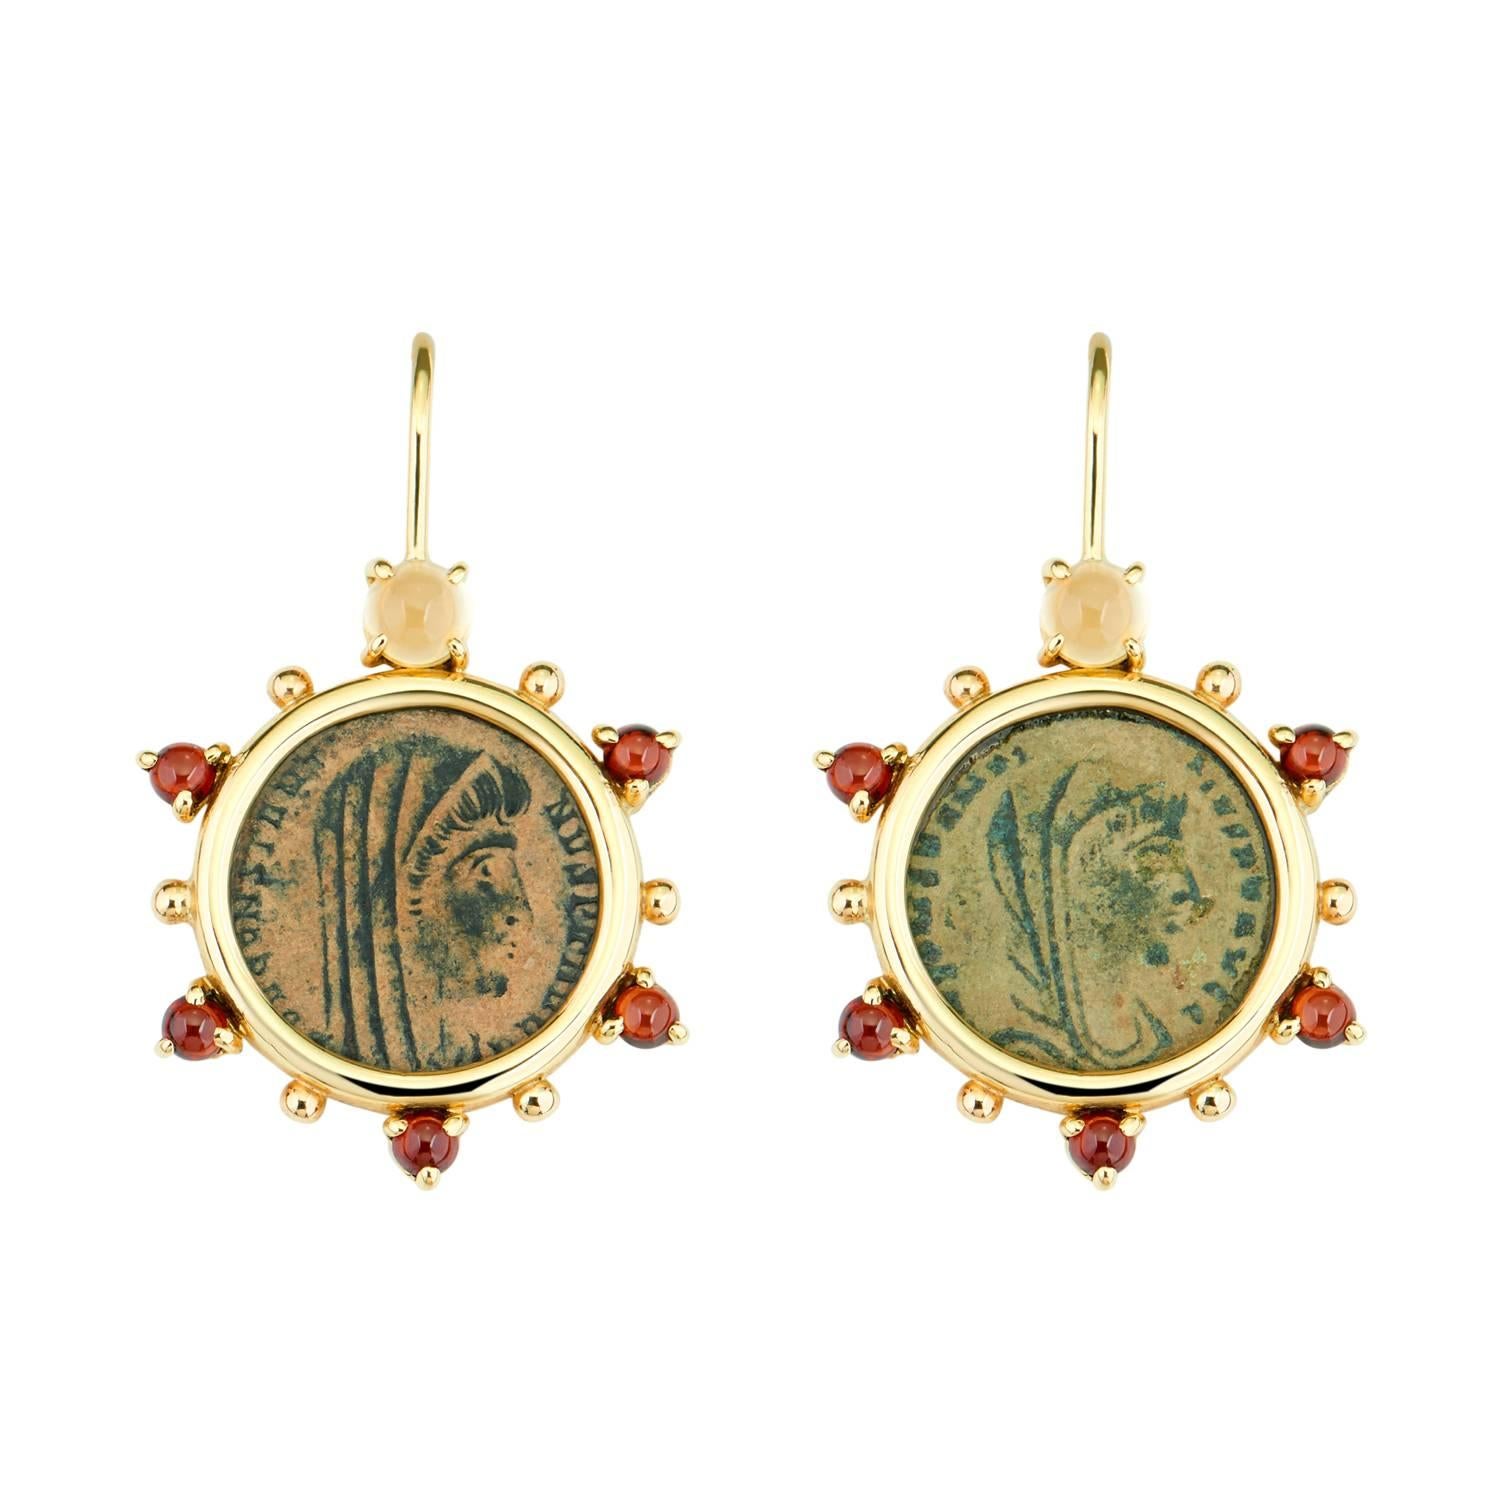 Dubini Boucles d'oreilles en or 18 carats avec pièce de monnaie romaine antique en bronze, citrine et grenats